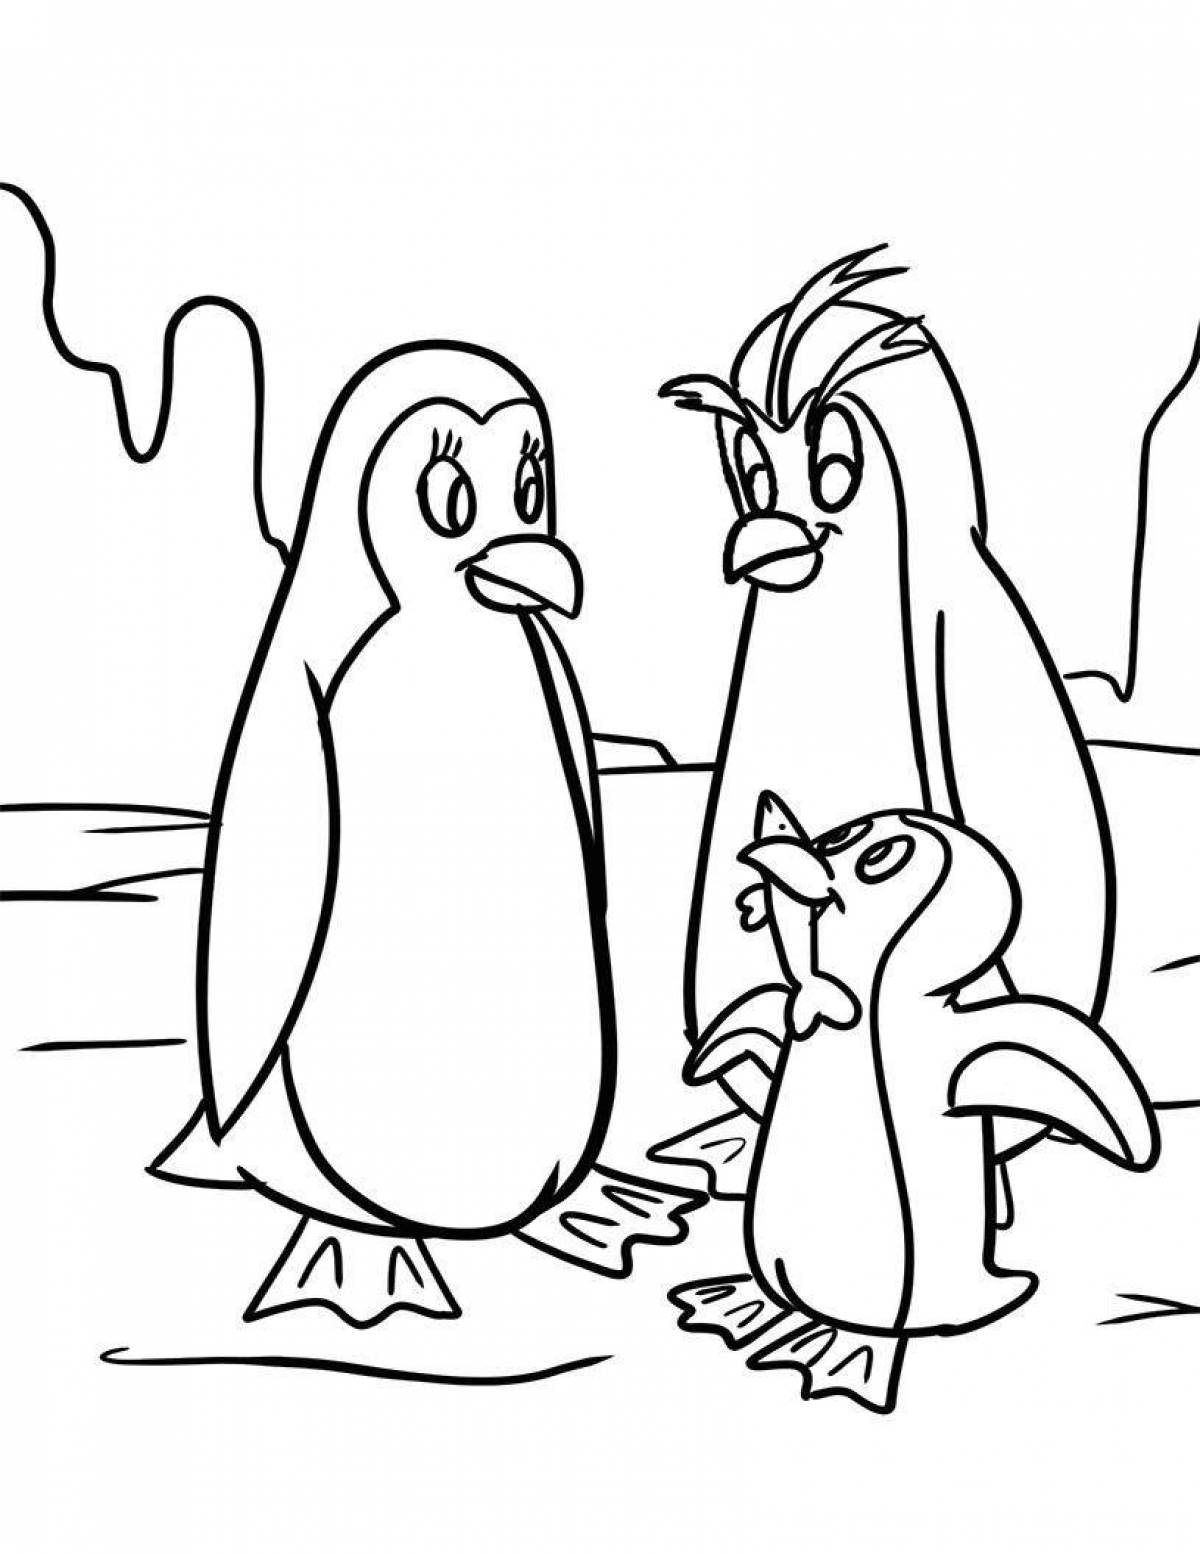 Нахальная раскраска забавный пингвин